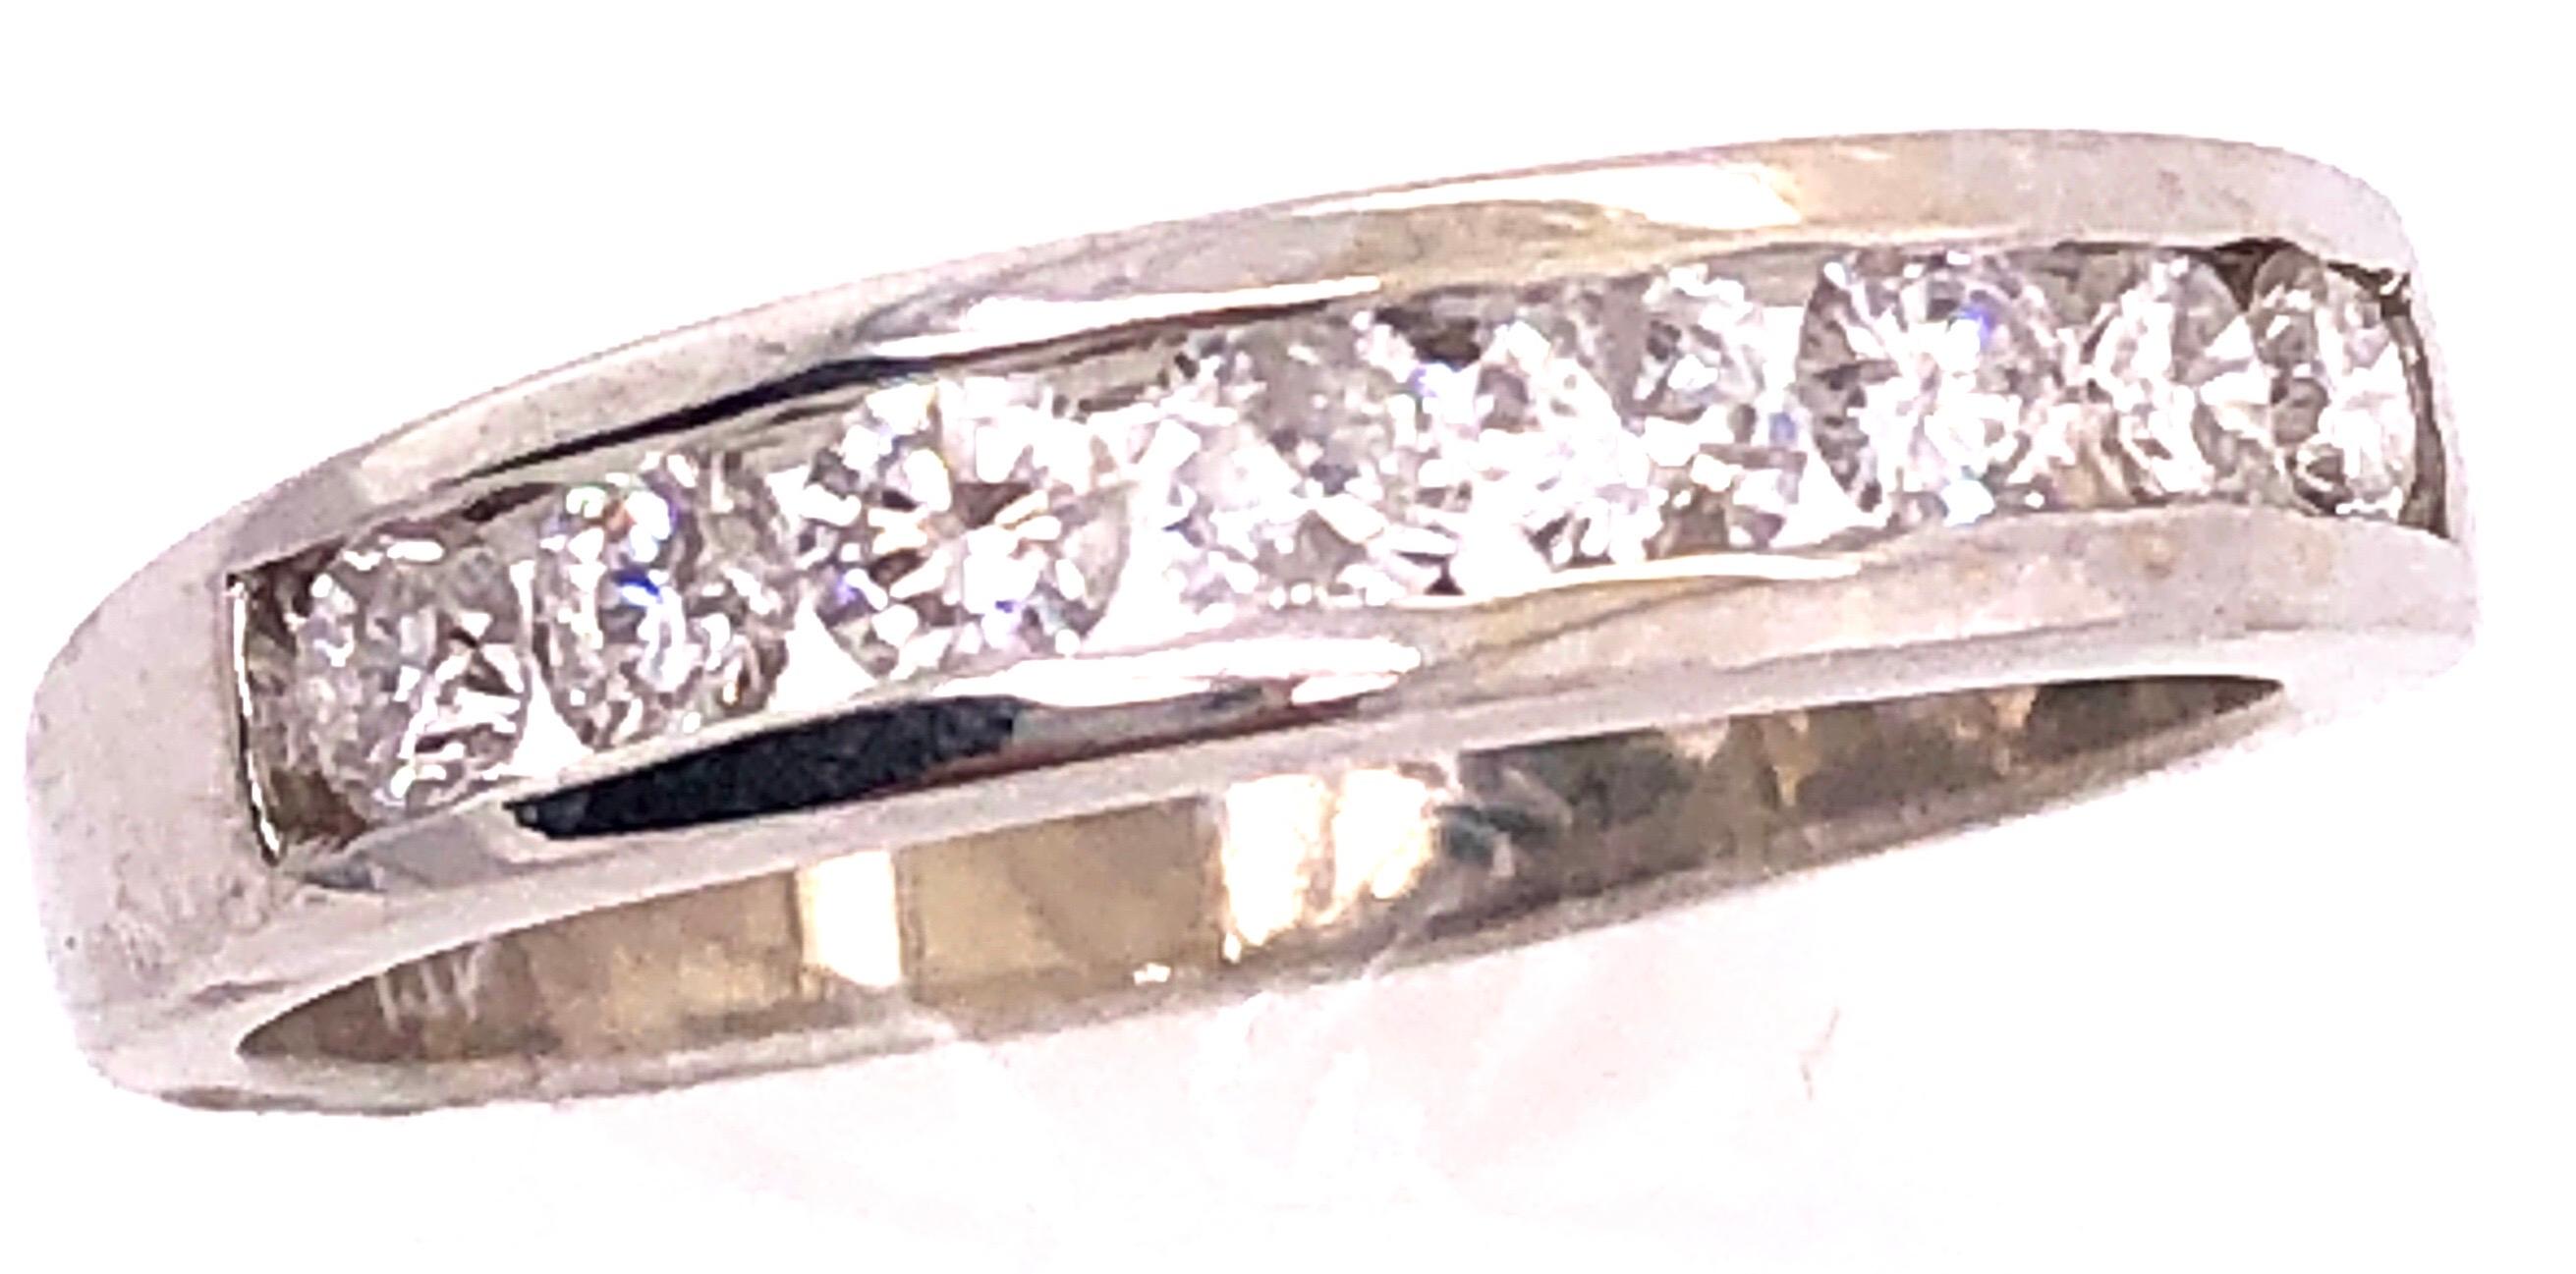 14 Karat White Gold Bridal Ring/Wedding Ring 0.80 Total Diamond Weight.
Size 7
3.6 grams total weight.